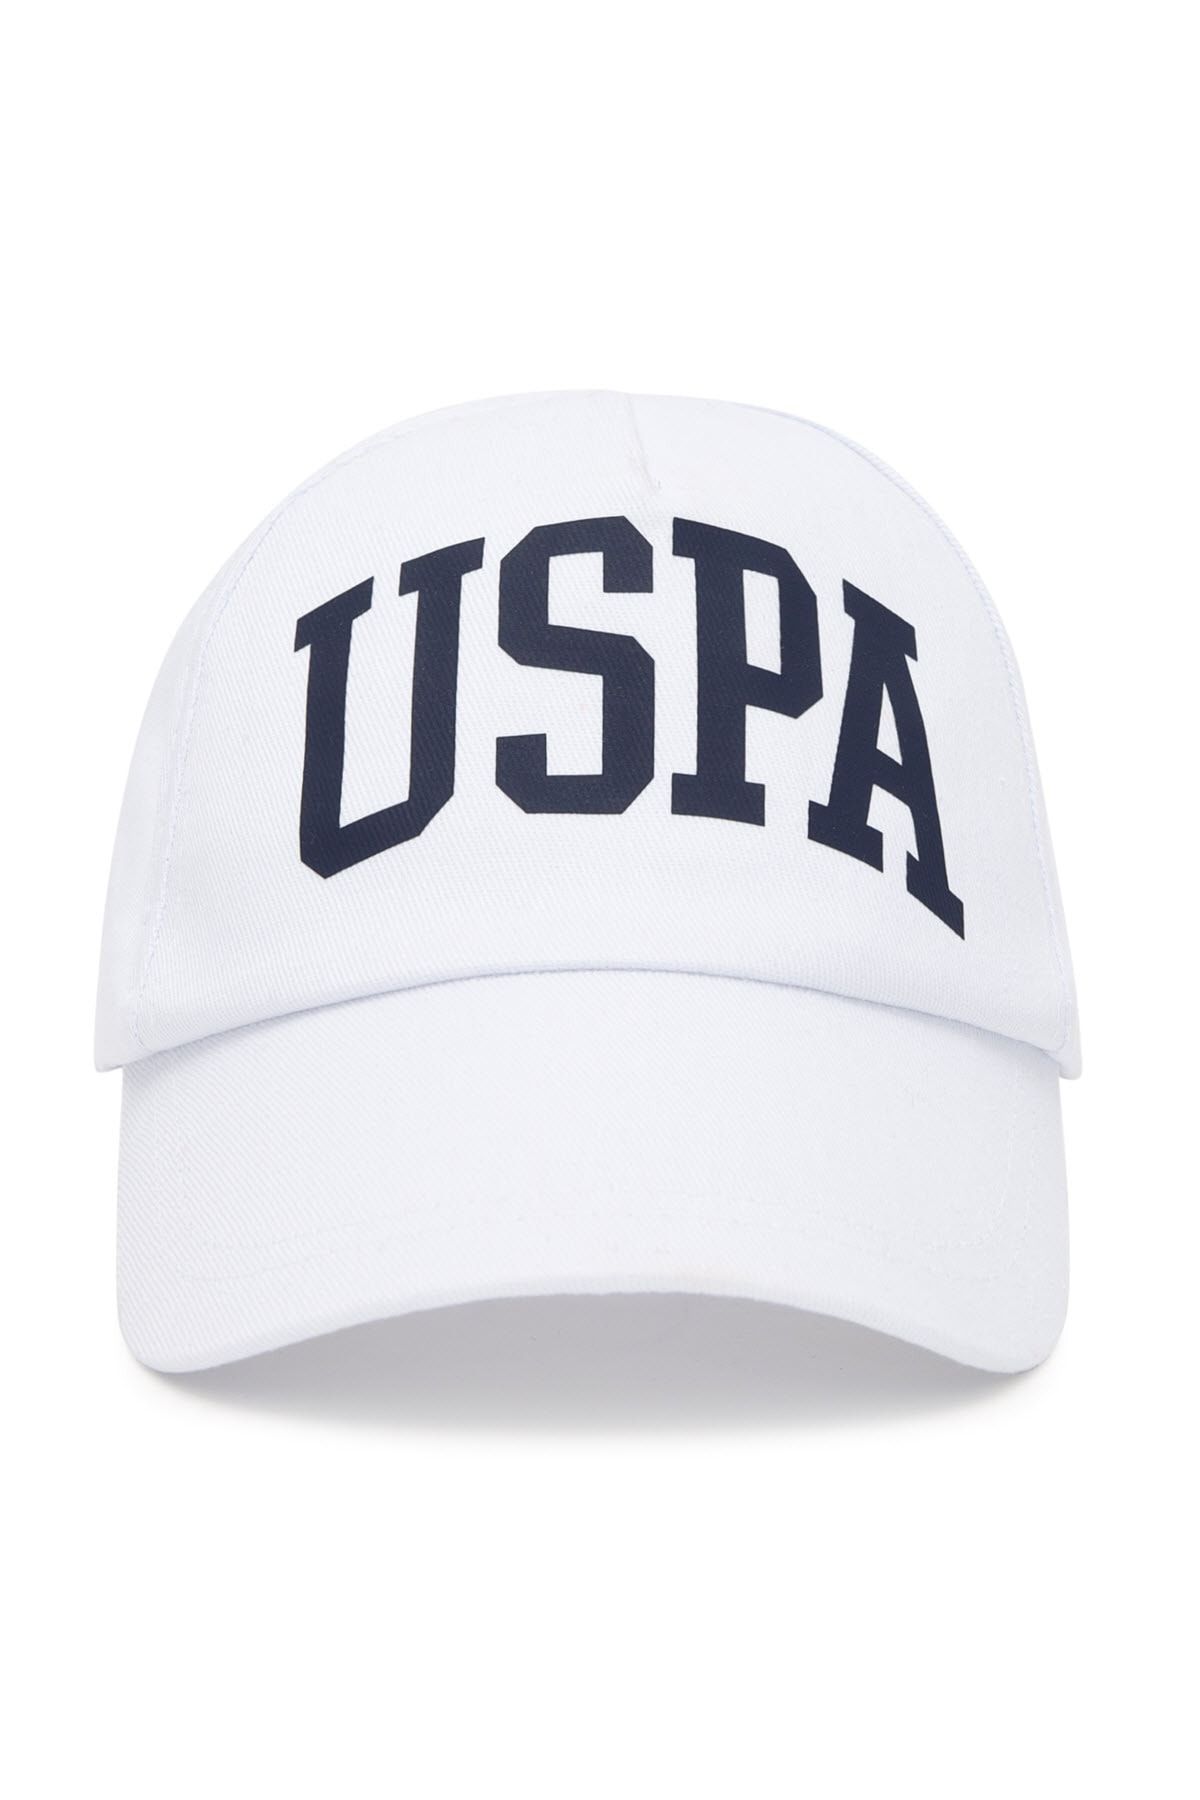 U.S. Polo Assn. Beyaz Erkek Çocuk Şapka